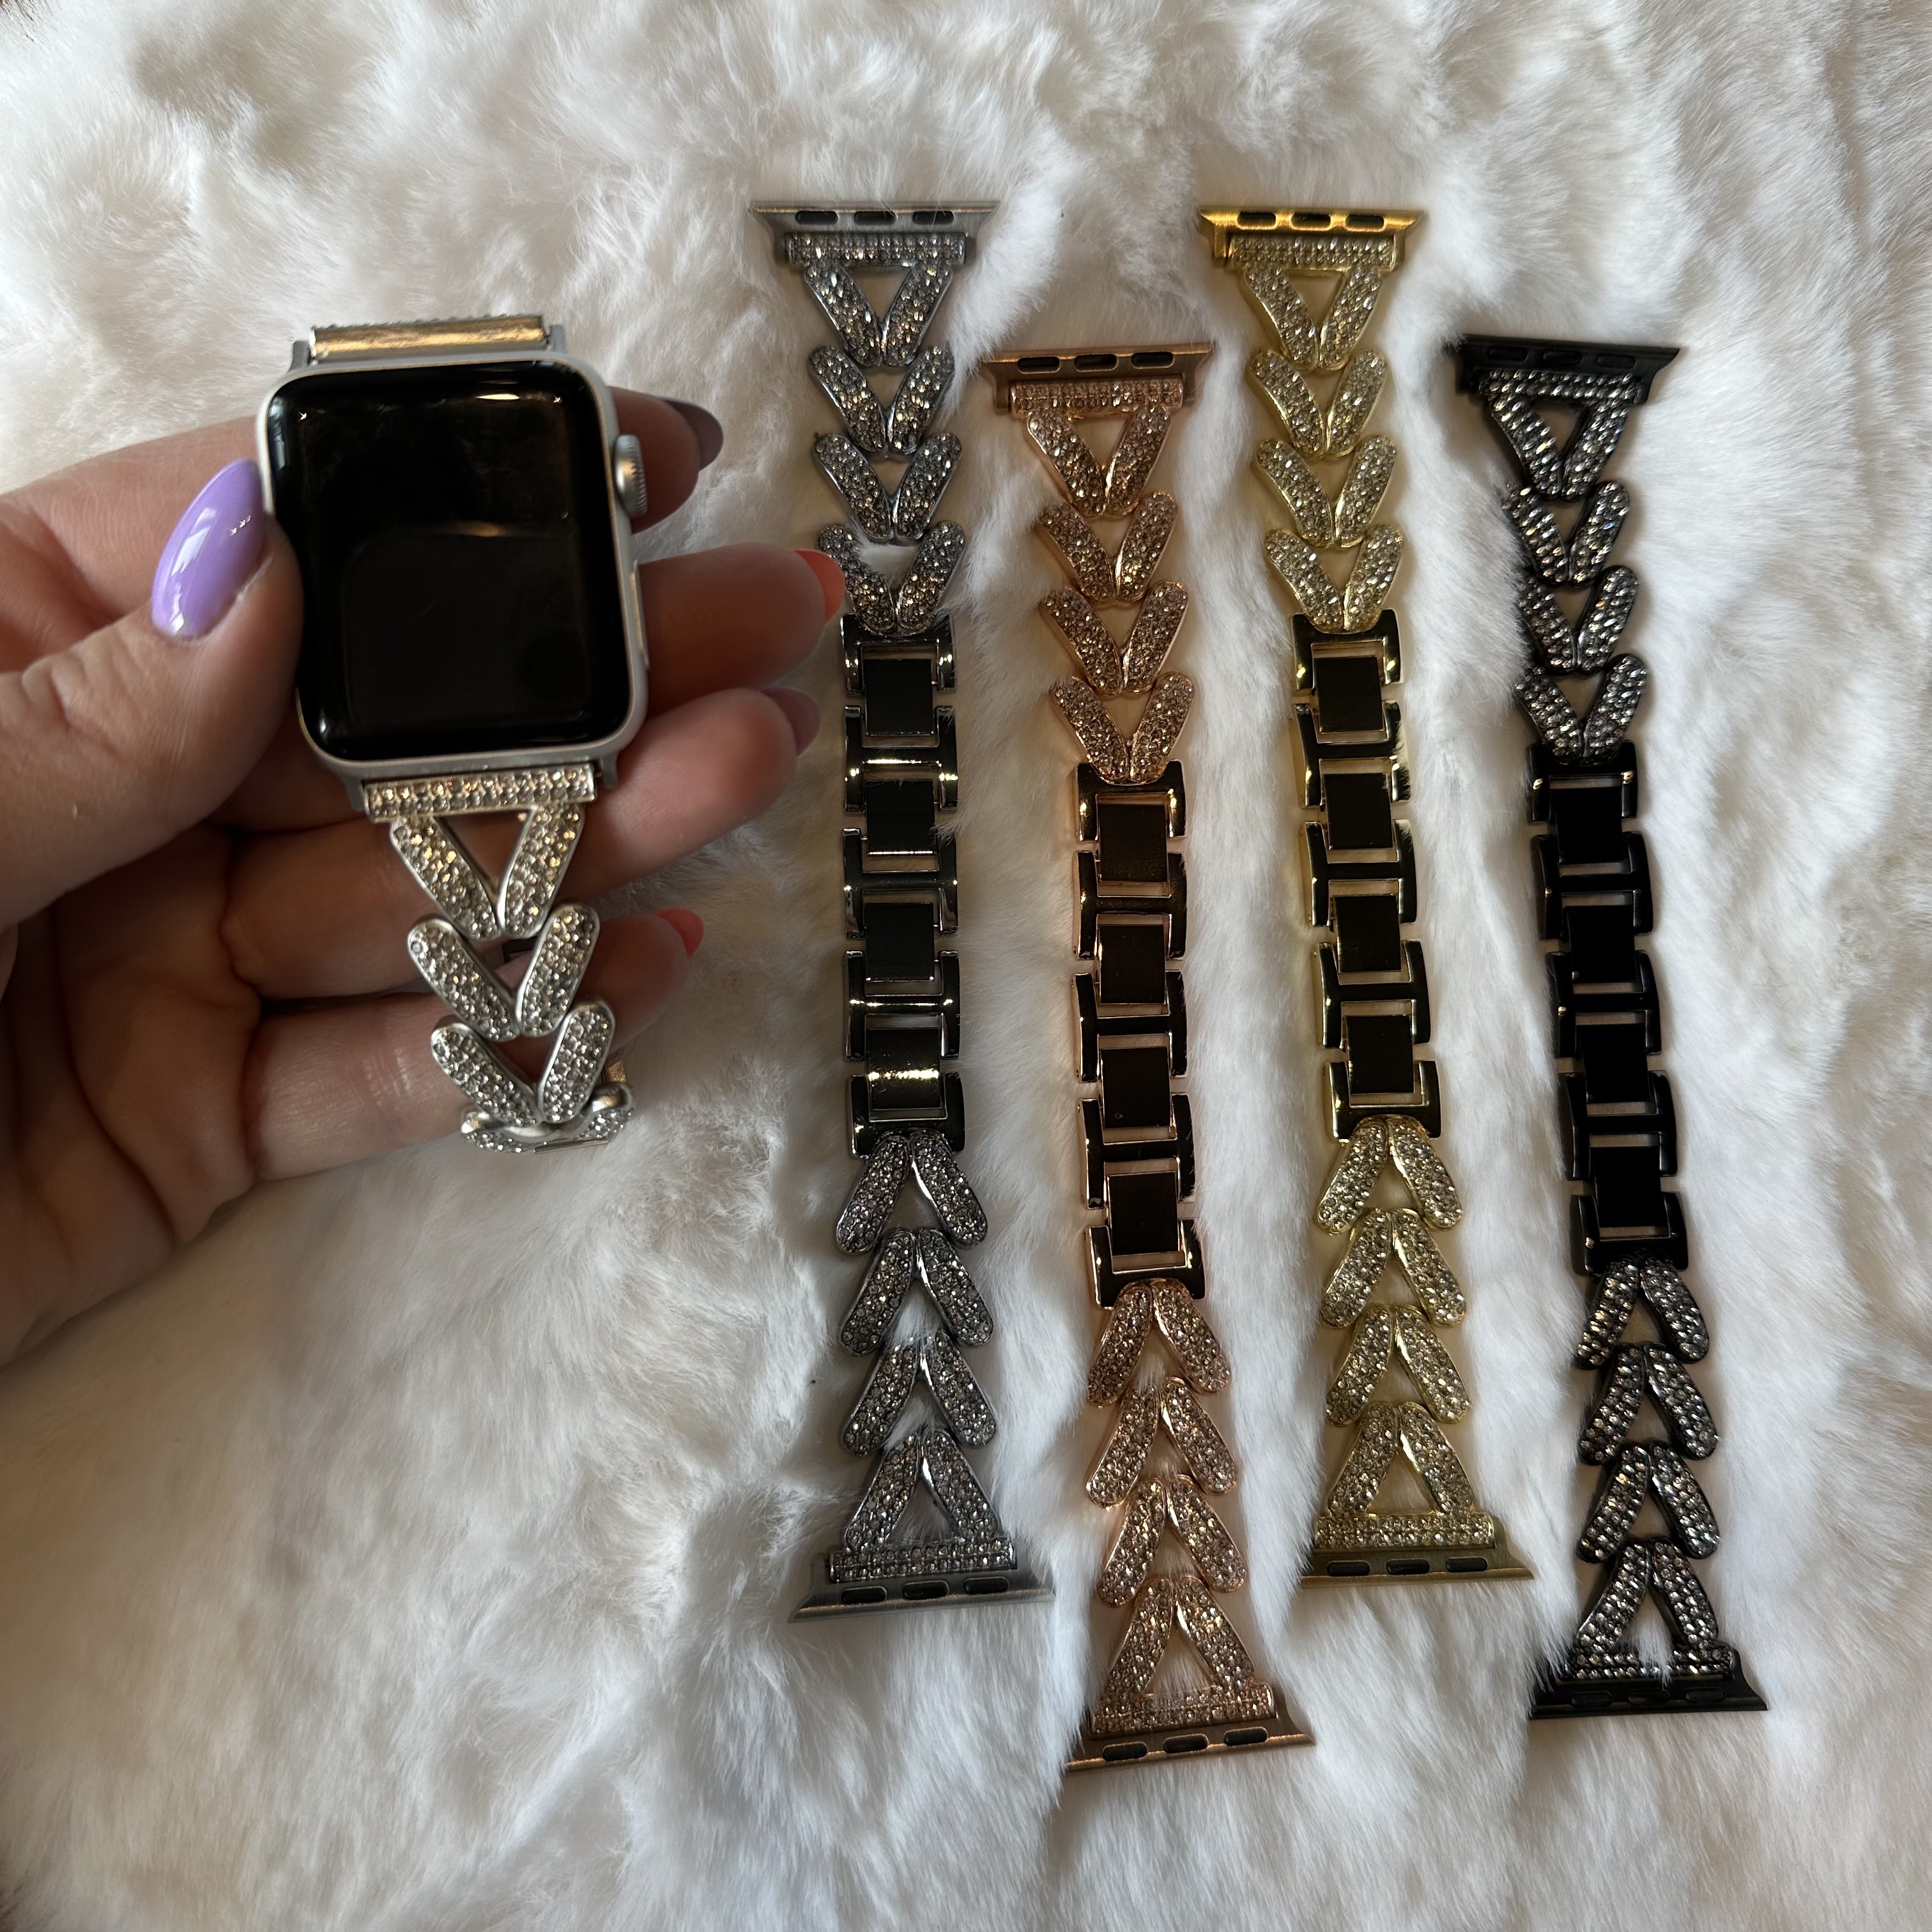 Apple Watch Herz-Stahlgliederarmband – Faye Polarstern